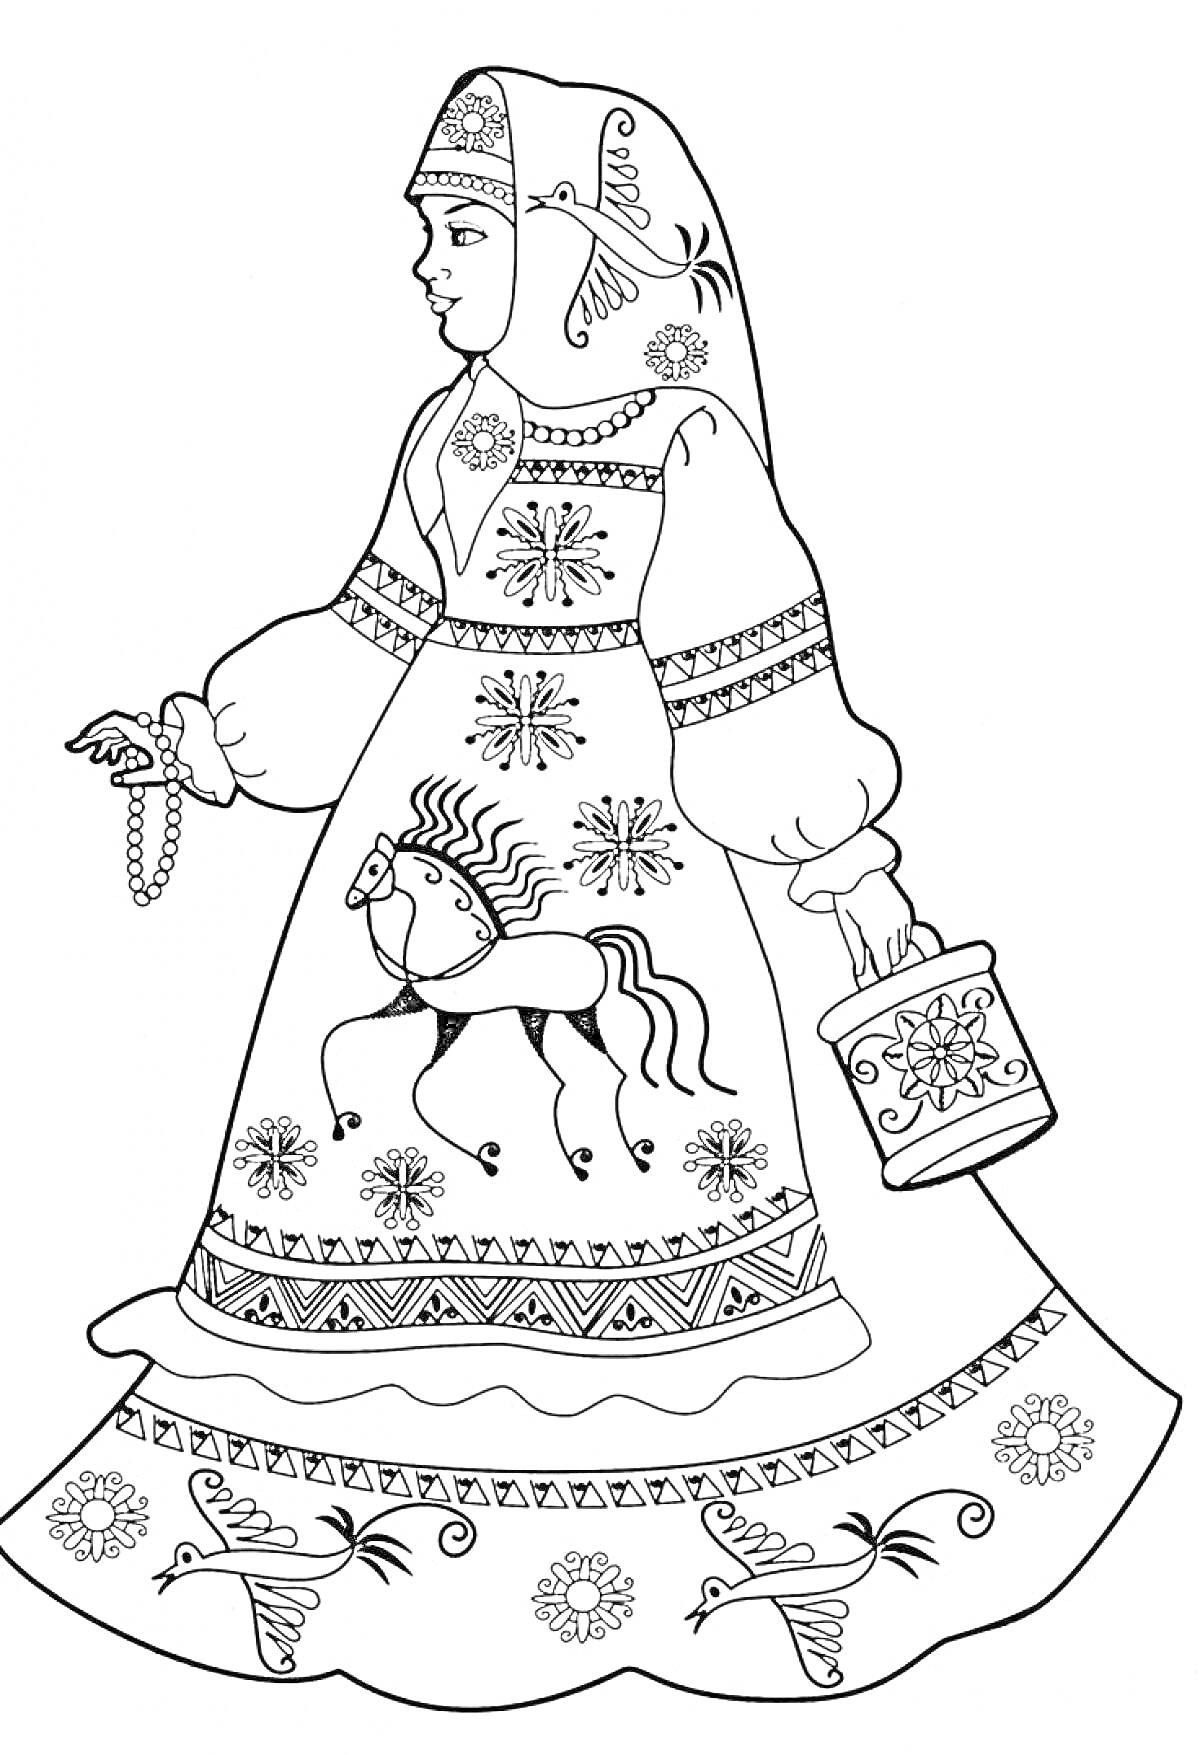 Раскраска Девочка в русском народном костюме с блестками, украшенным цветами, лошадью и узорами, держащая ведерко и ягодную кисть